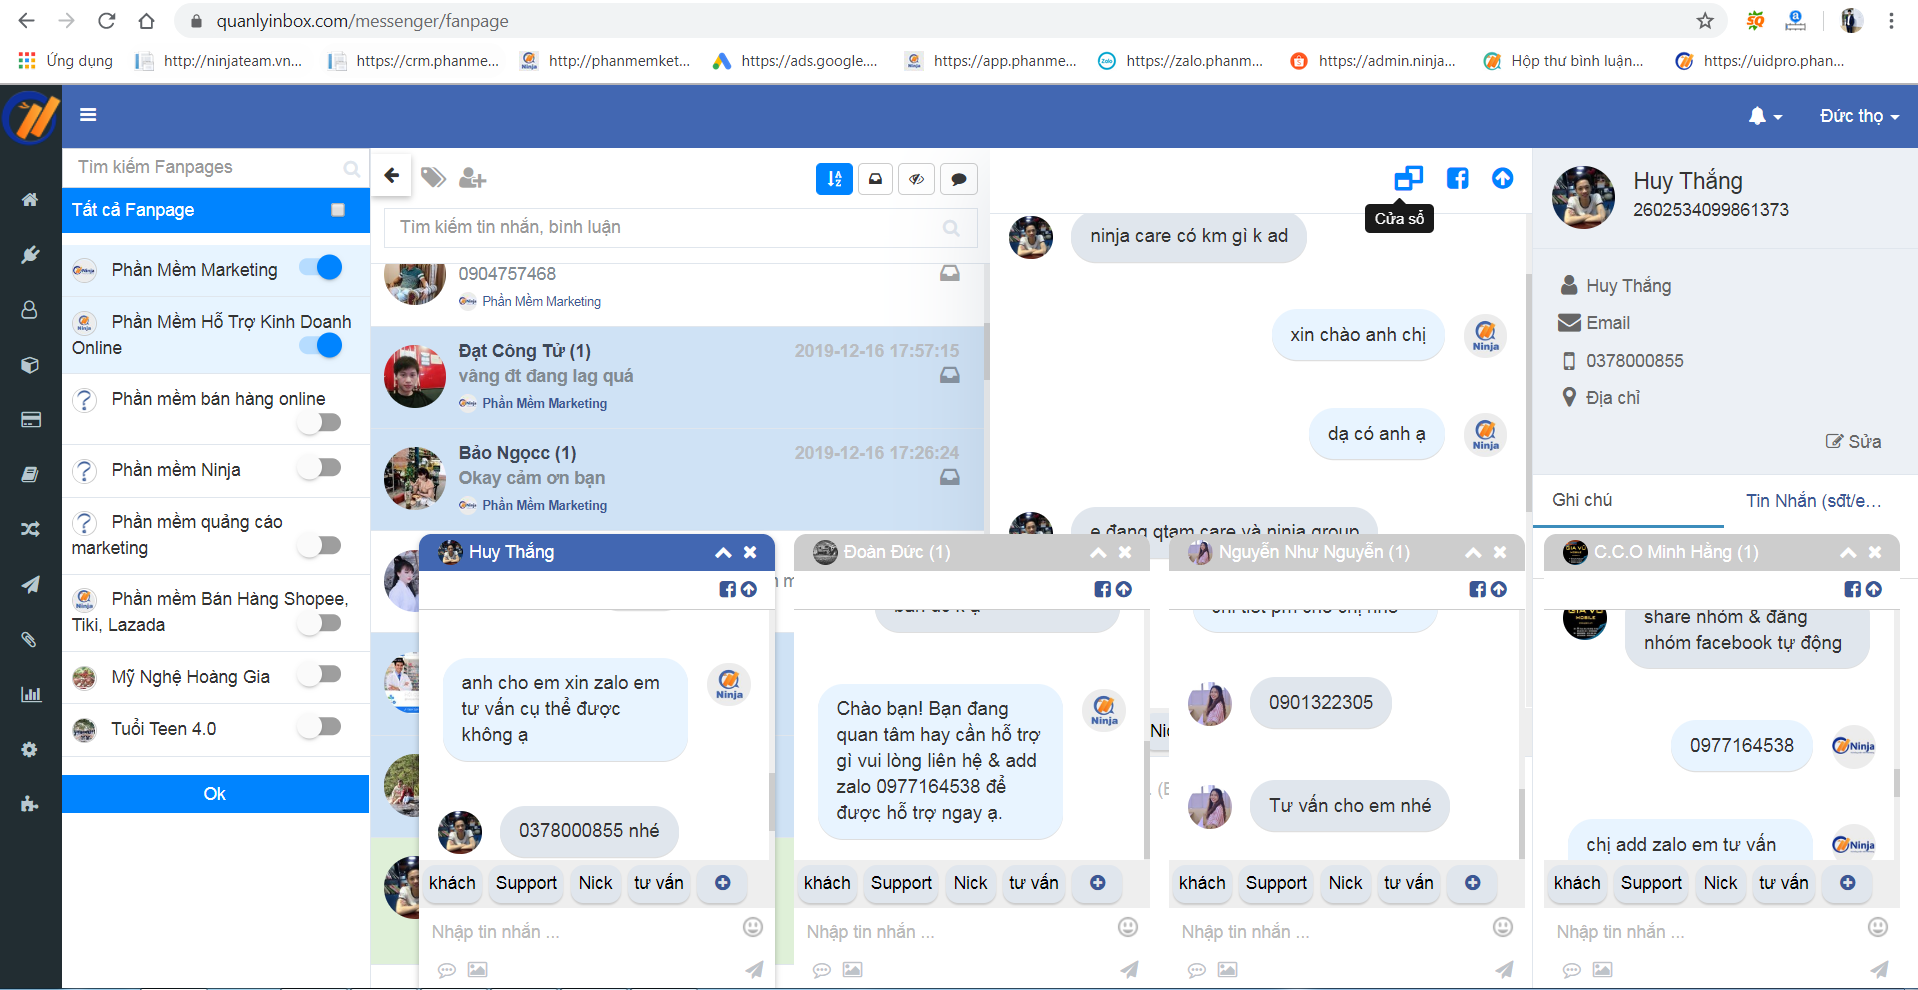 ninja fp 2 Ninja Fanpage – phần mềm quản lý inbox comment, chatbot thông minh hiệu quả